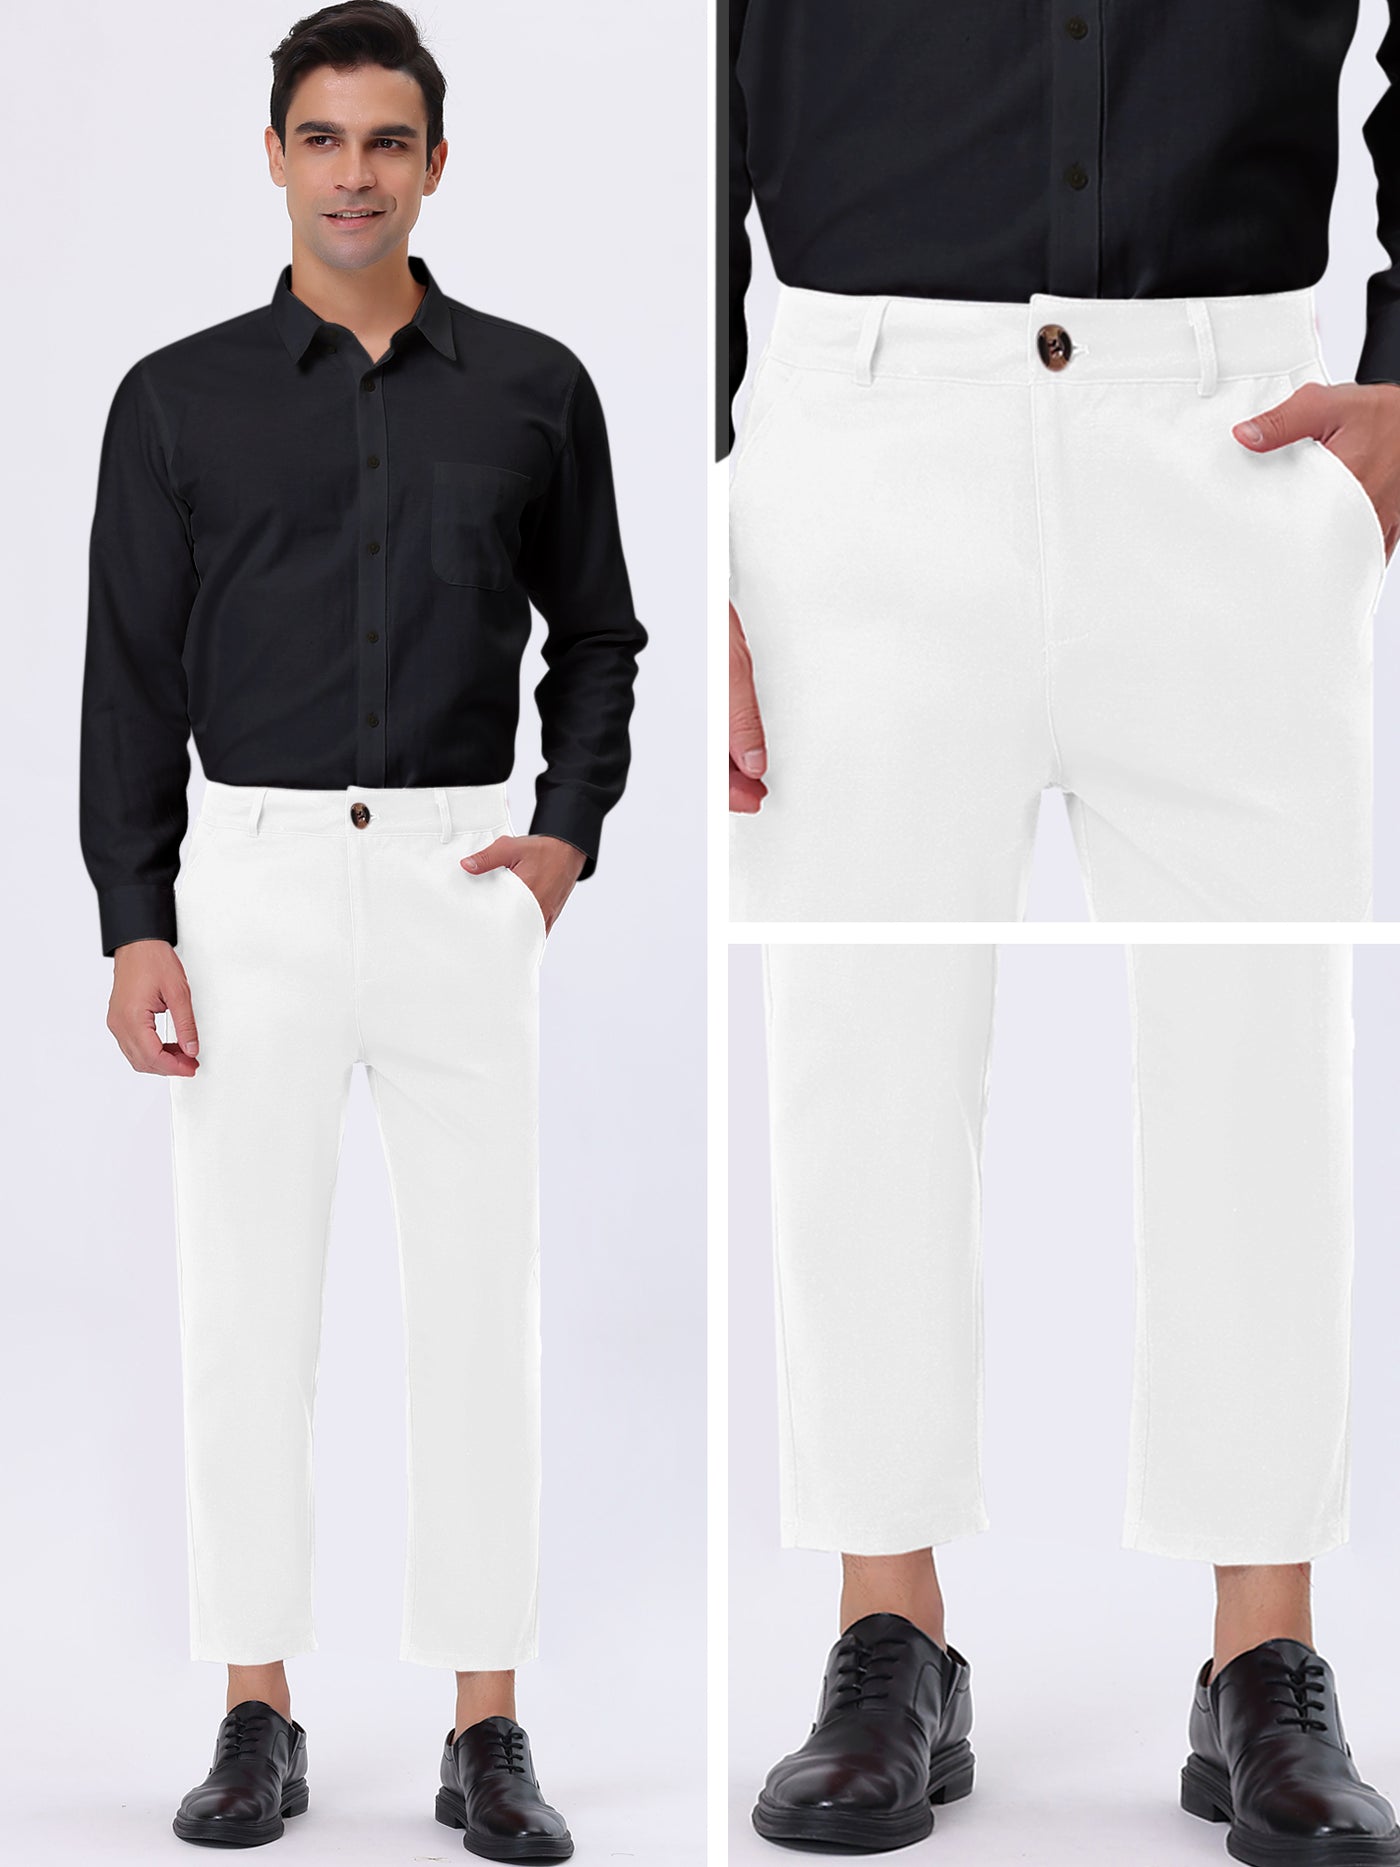 Bublédon Men's Business Pants Classic Fit Flat Front Straight Suit Trousers